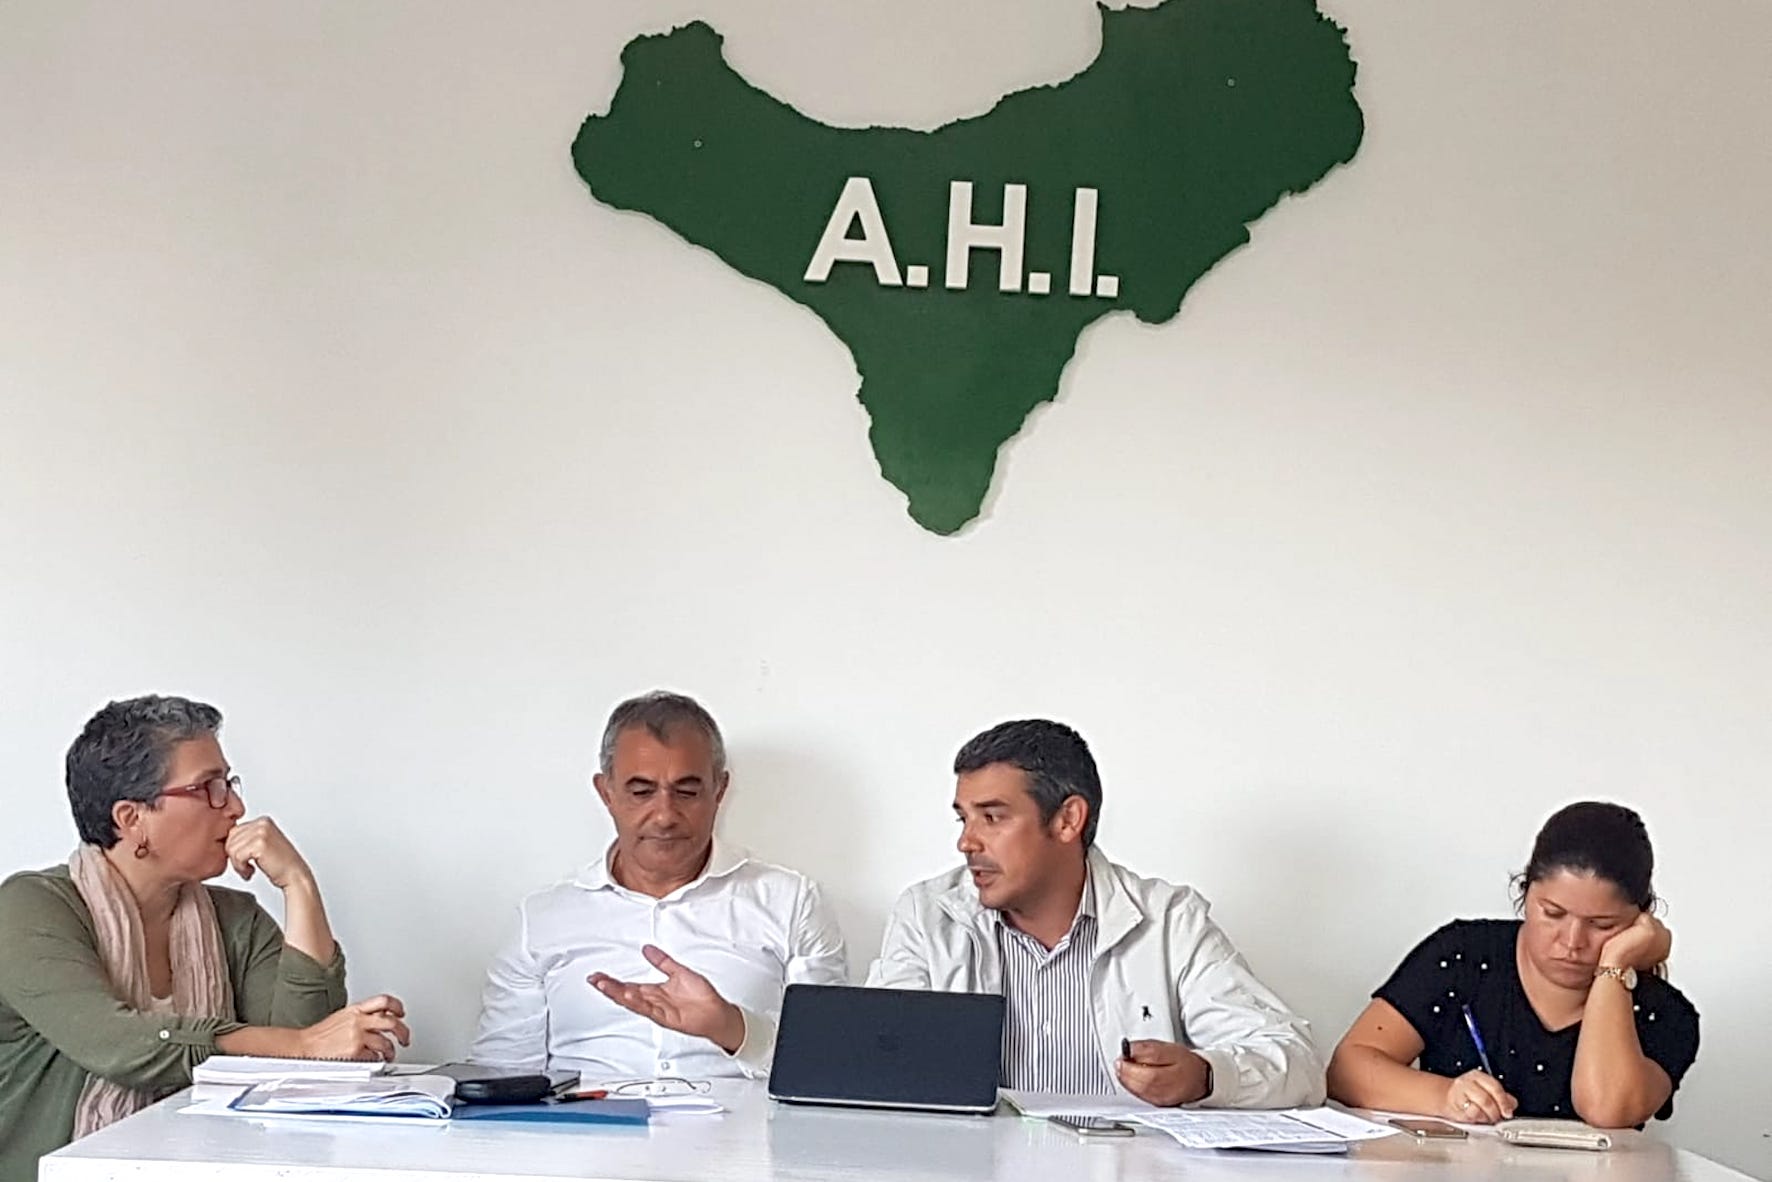 La AHI pone en marcha su nuevo Consejo Político aprobando su estrategia electoral para el 10N